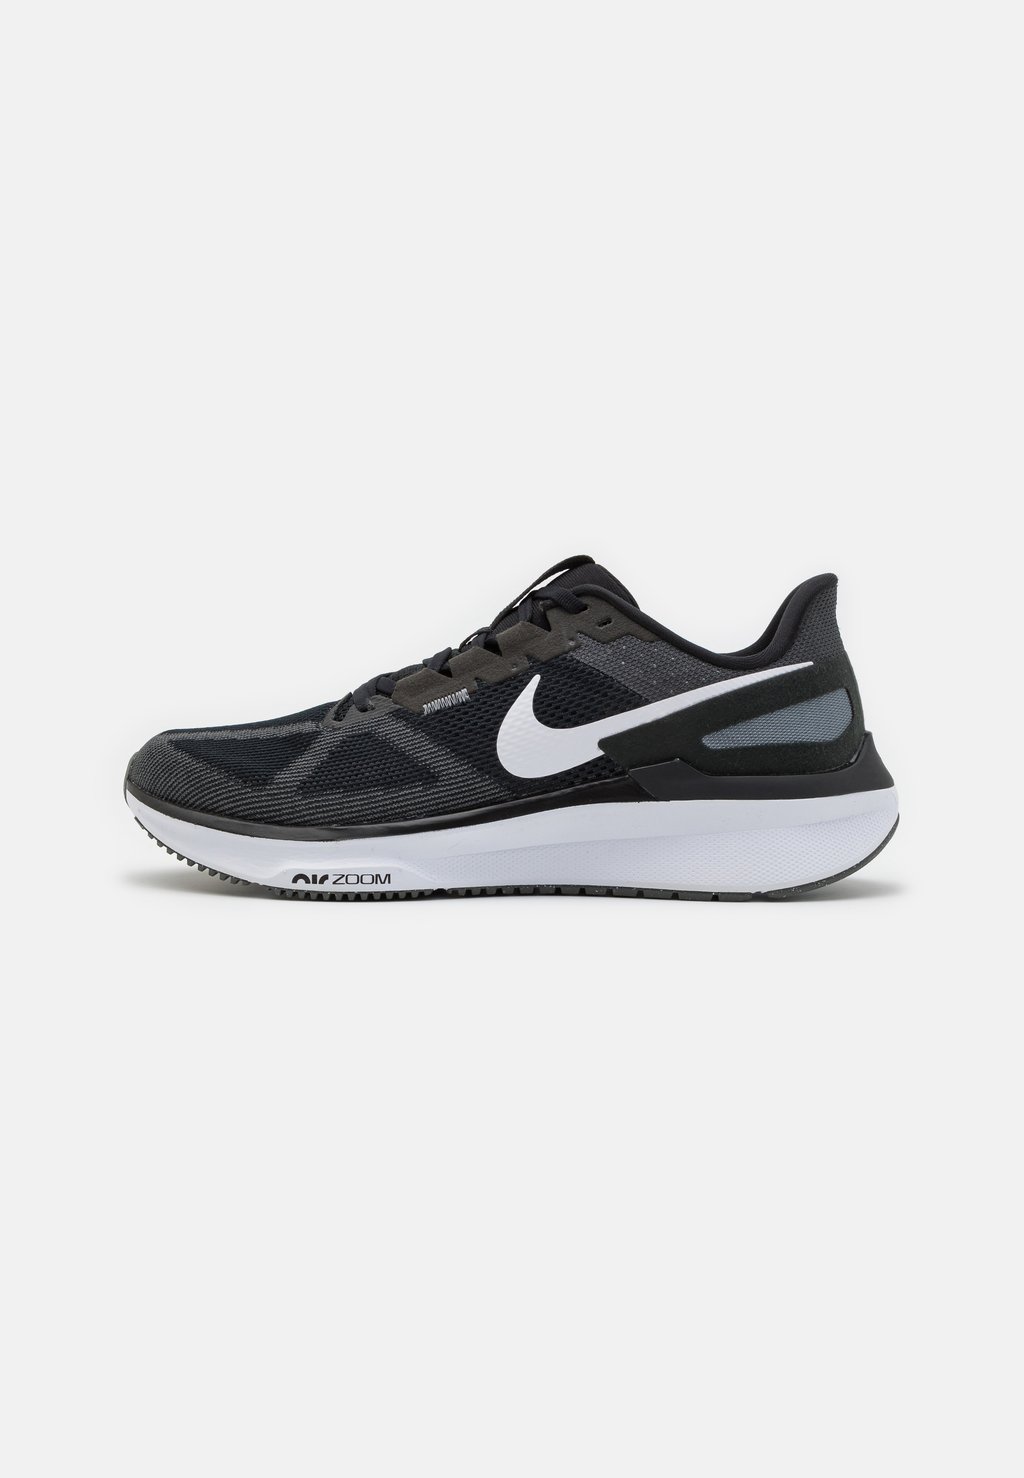 Нейтральные кроссовки Air Zoom Structure 25 Nike, цвет black/iron grey/white